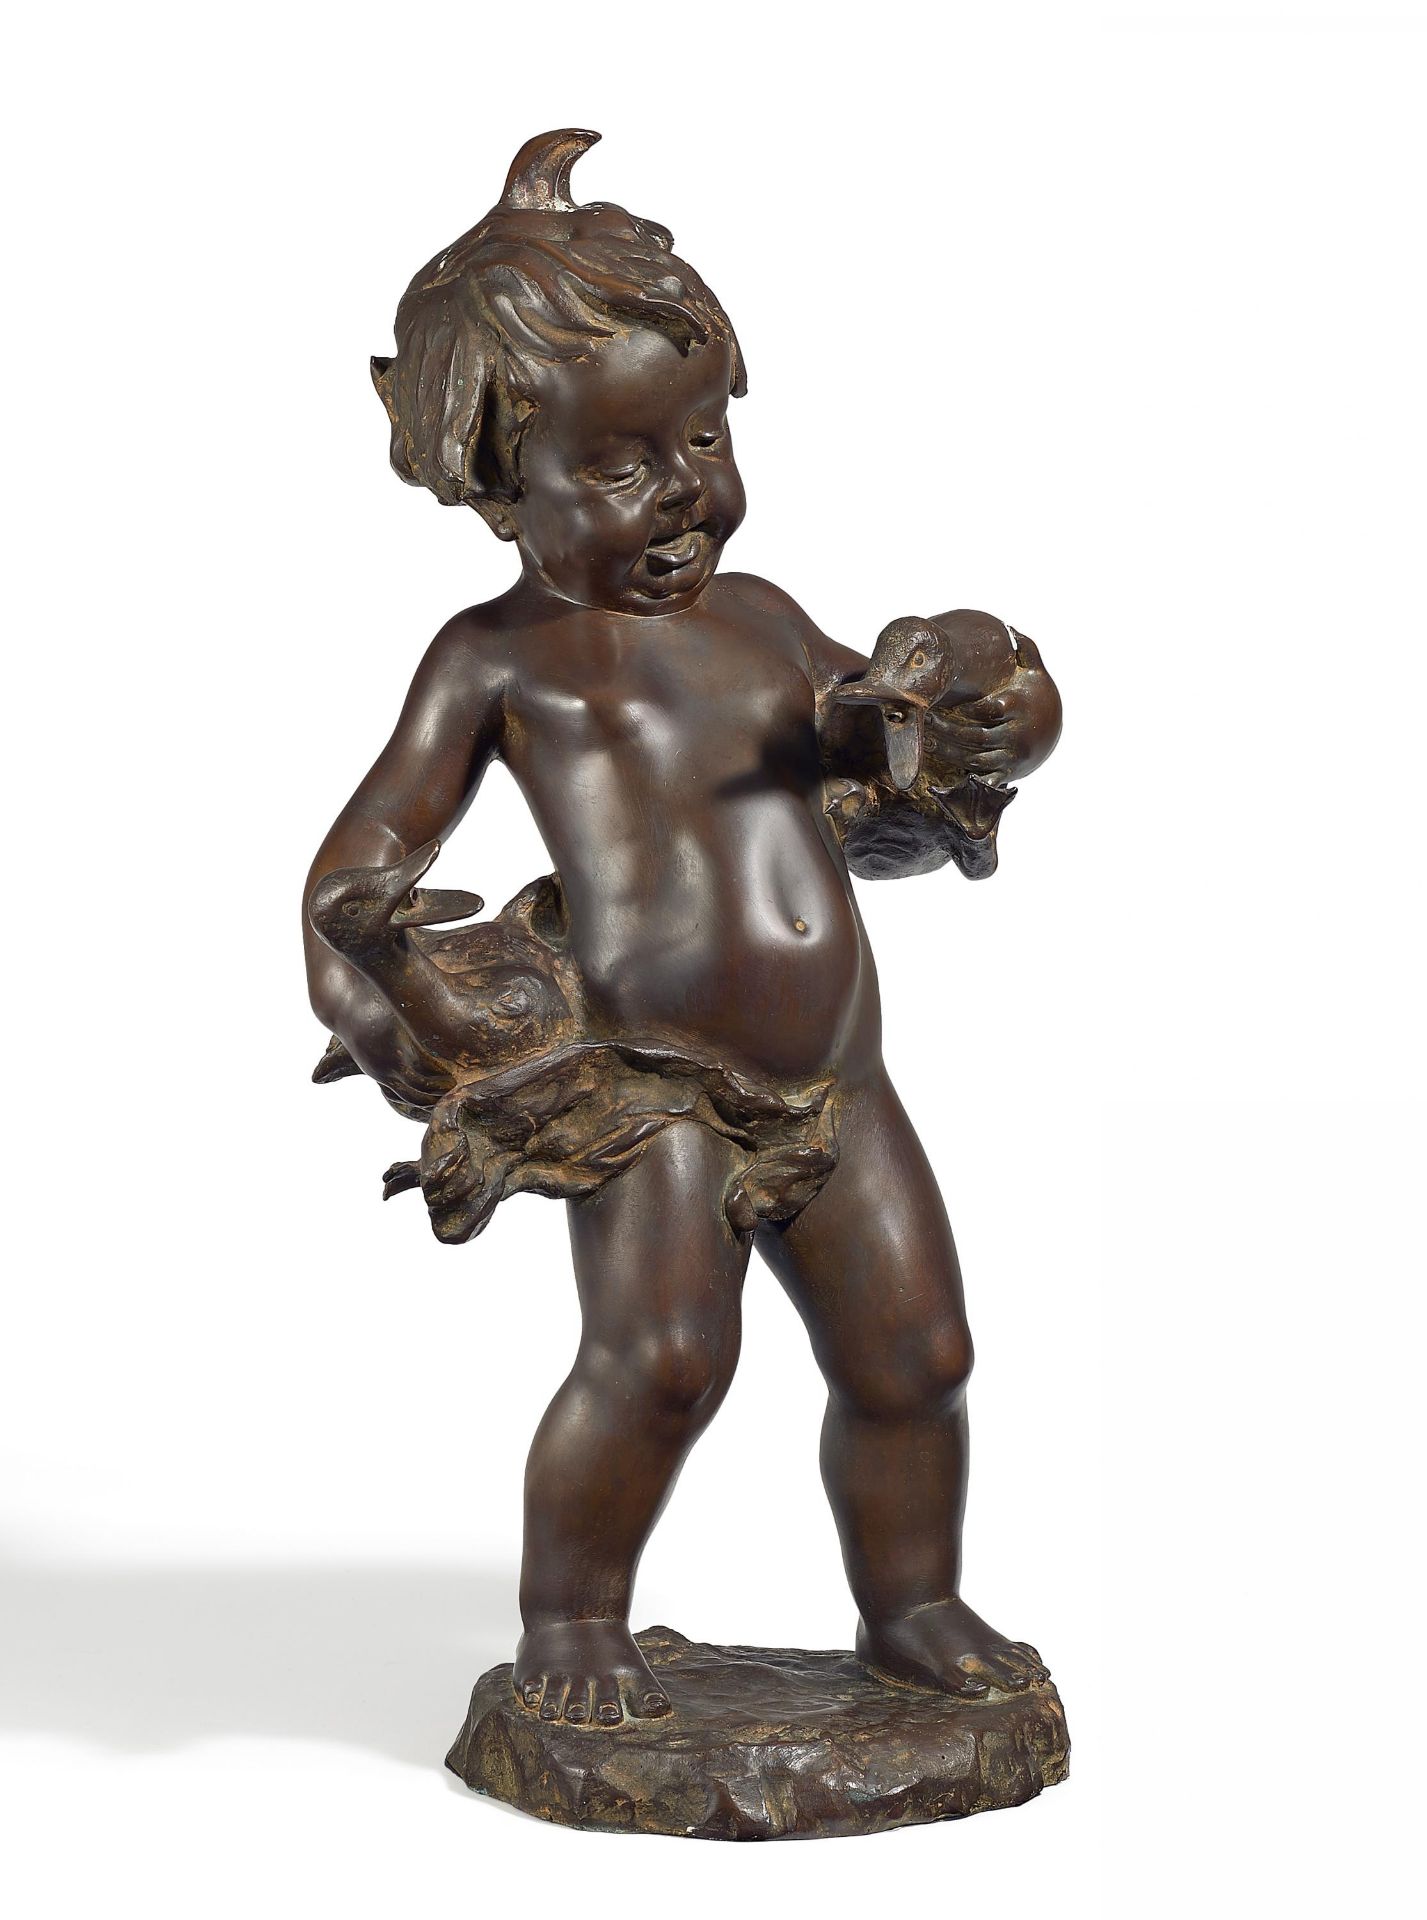 BRUNNENFIGUR 'KNABE MIT GÄNSEN'. Florenz. Donatello Gabrielli (1884-1955). Bronze patiniert. Höhe 58